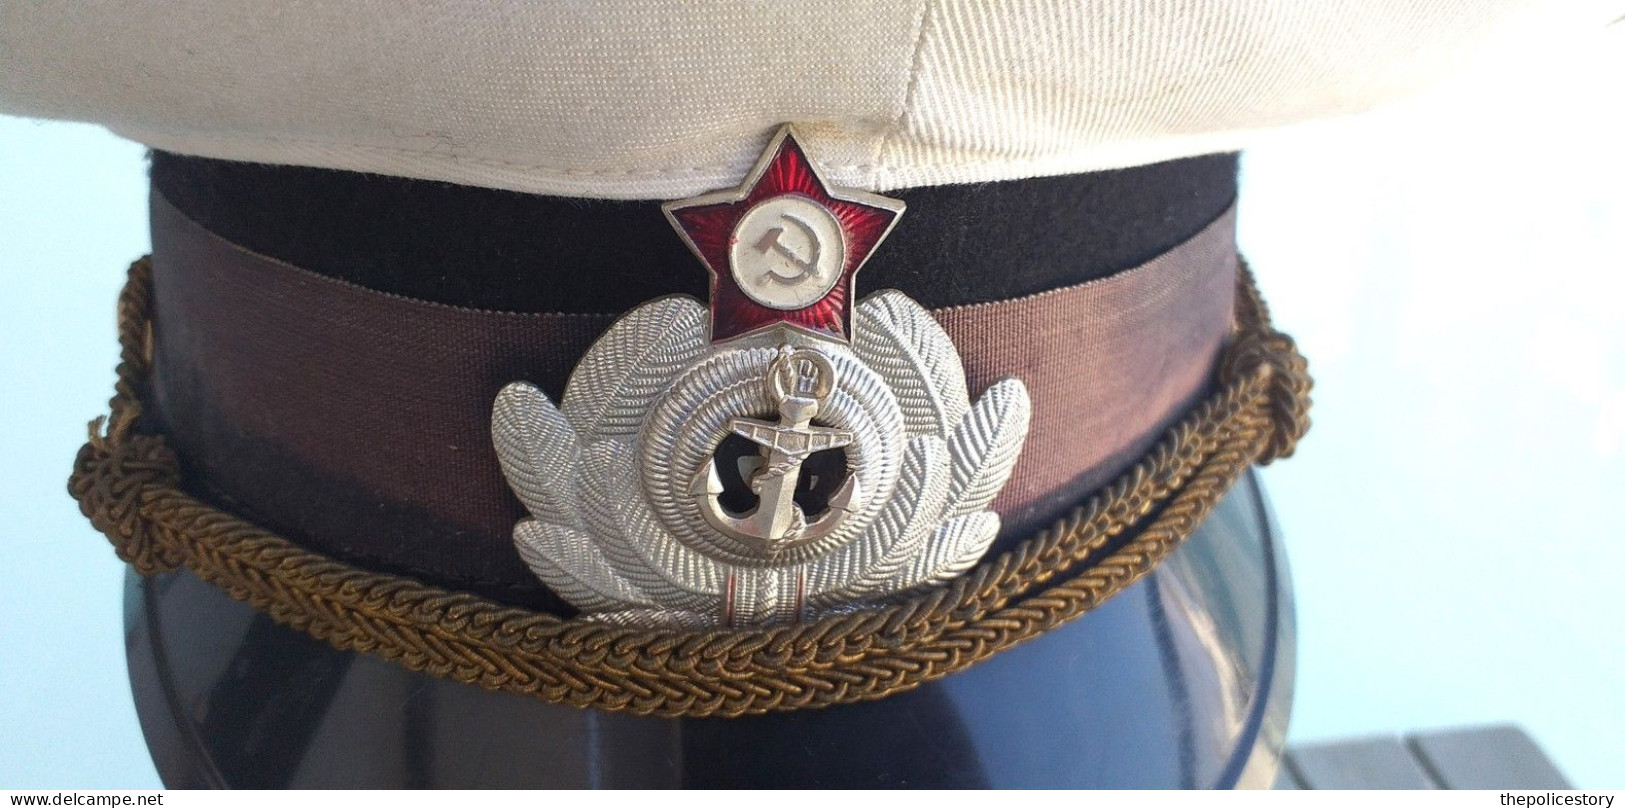 Berretto visiera Ufficiale Marina Sovietica del 1989 originale marcato completo